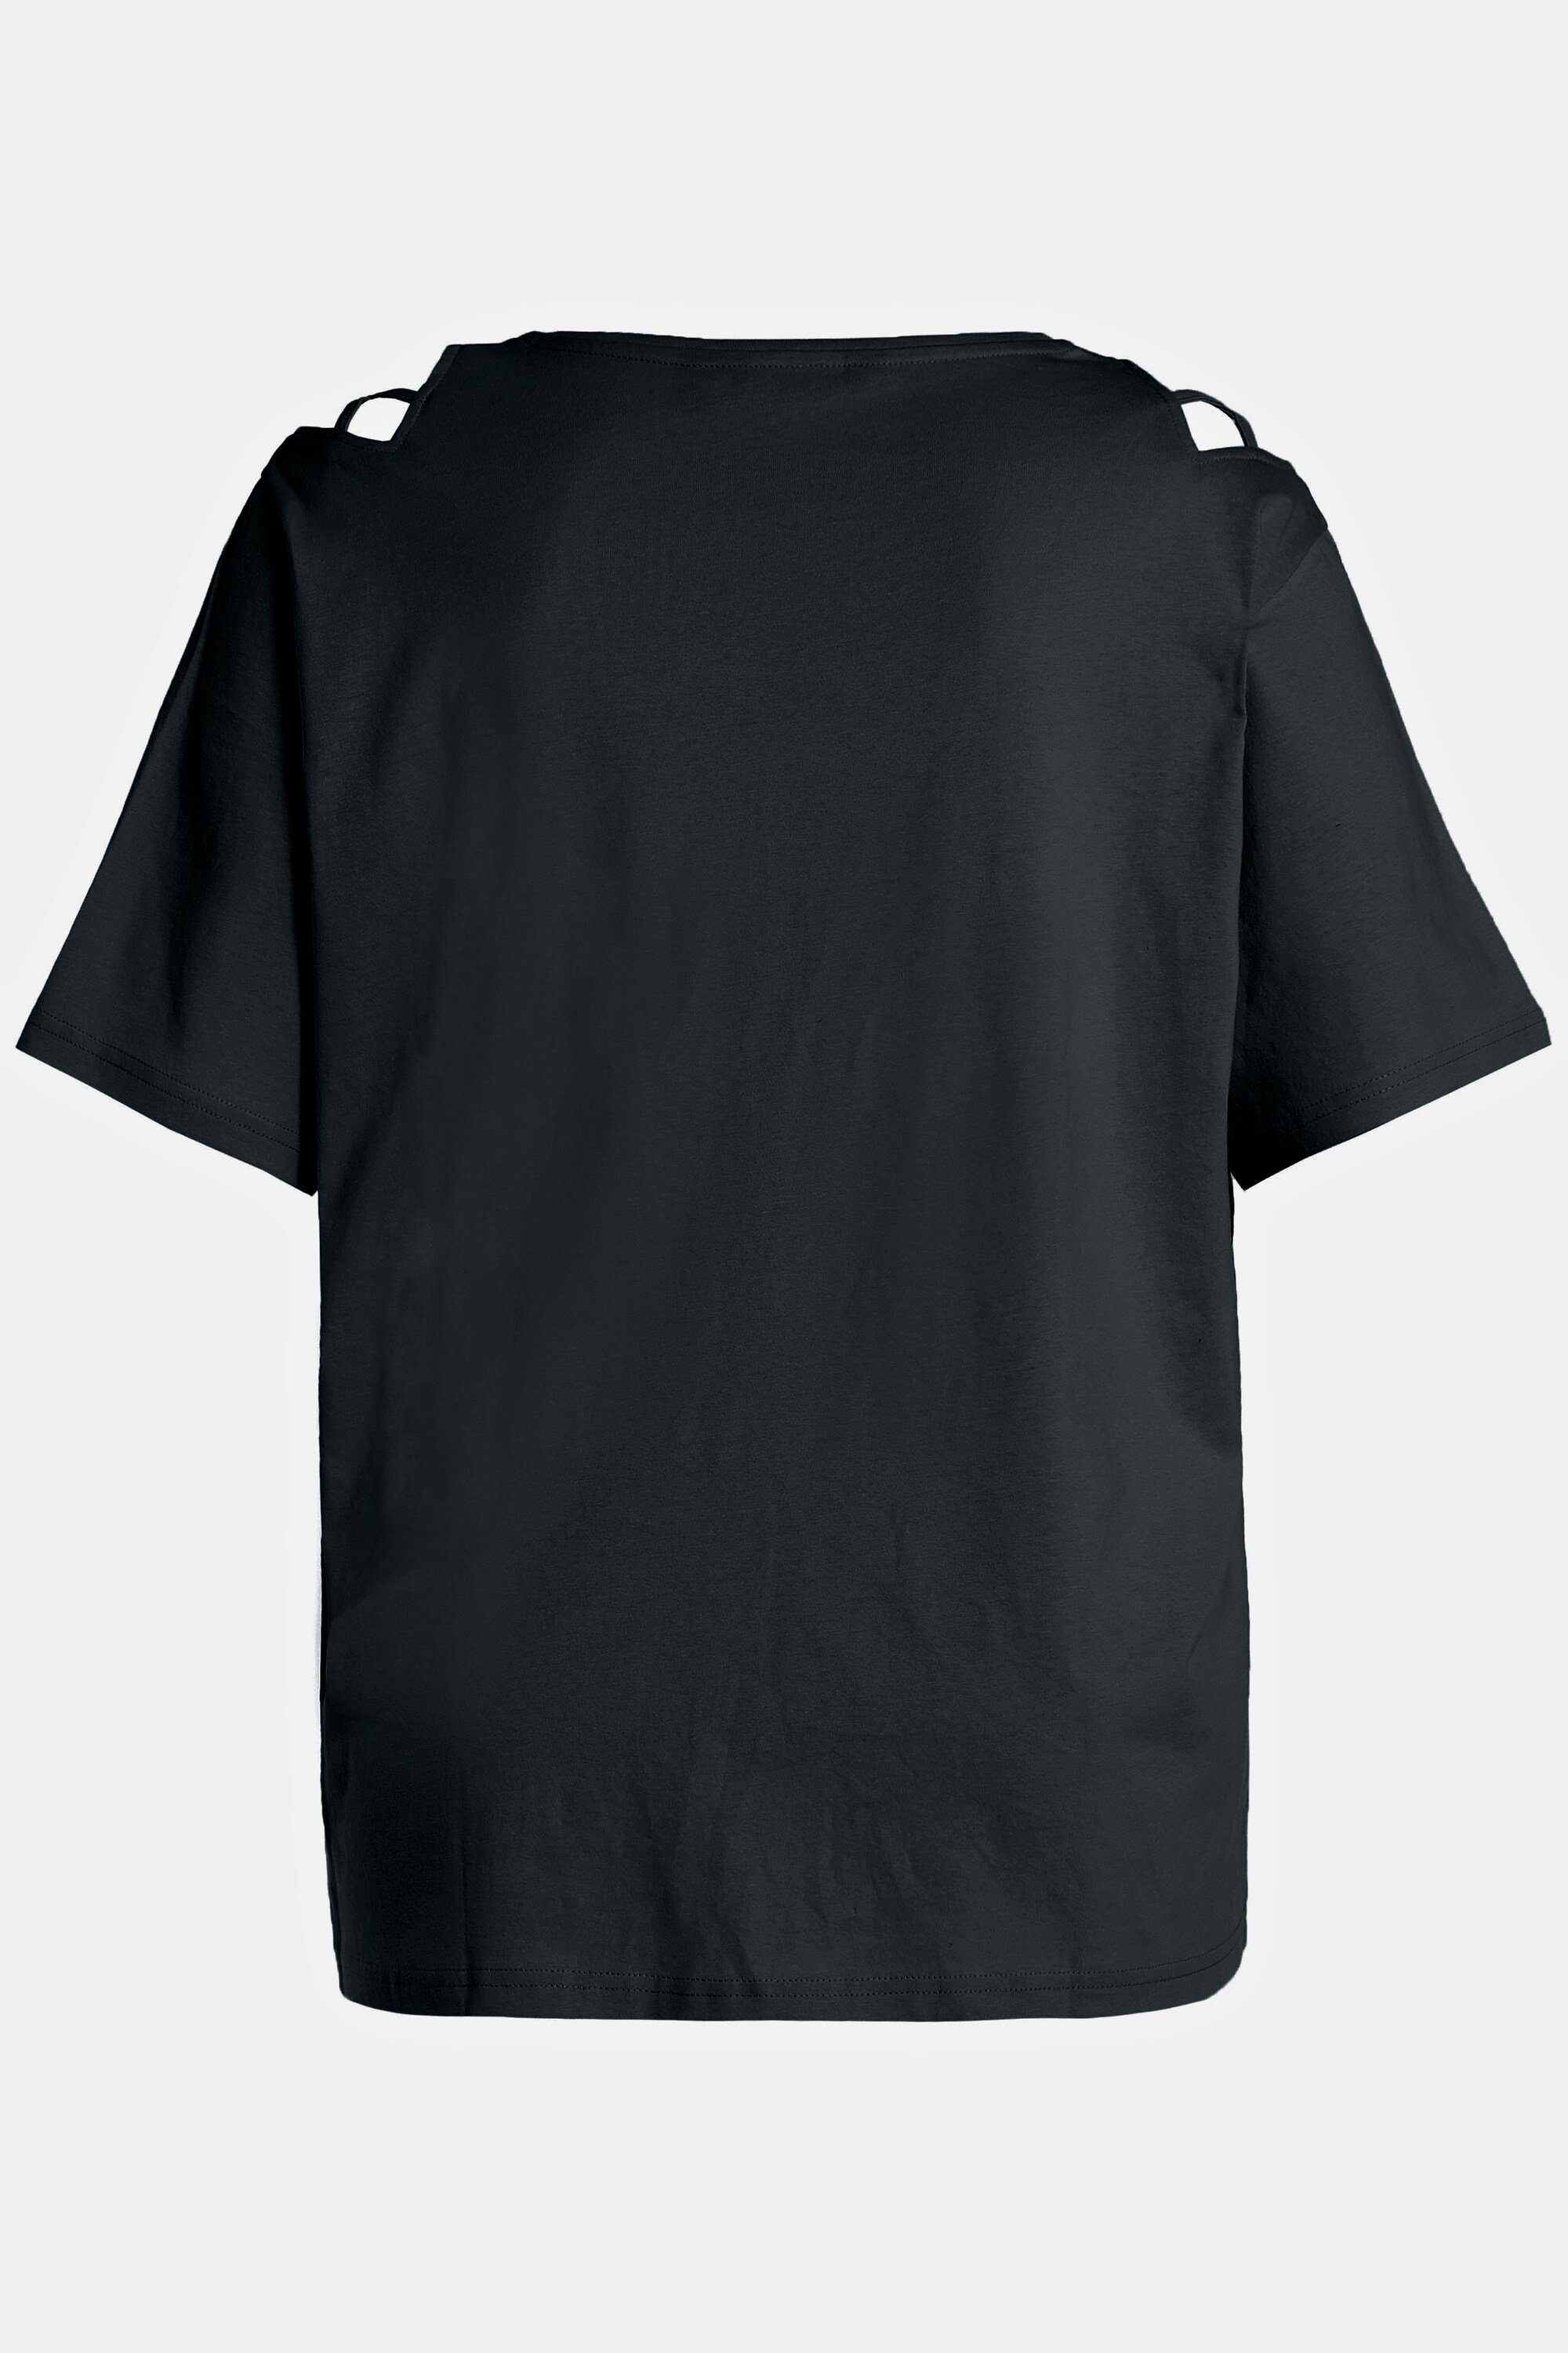 Schulterschlitze T-Shirt schwarz Popken Rundhalsshirt Halbarm V-Ausschnitt Ulla